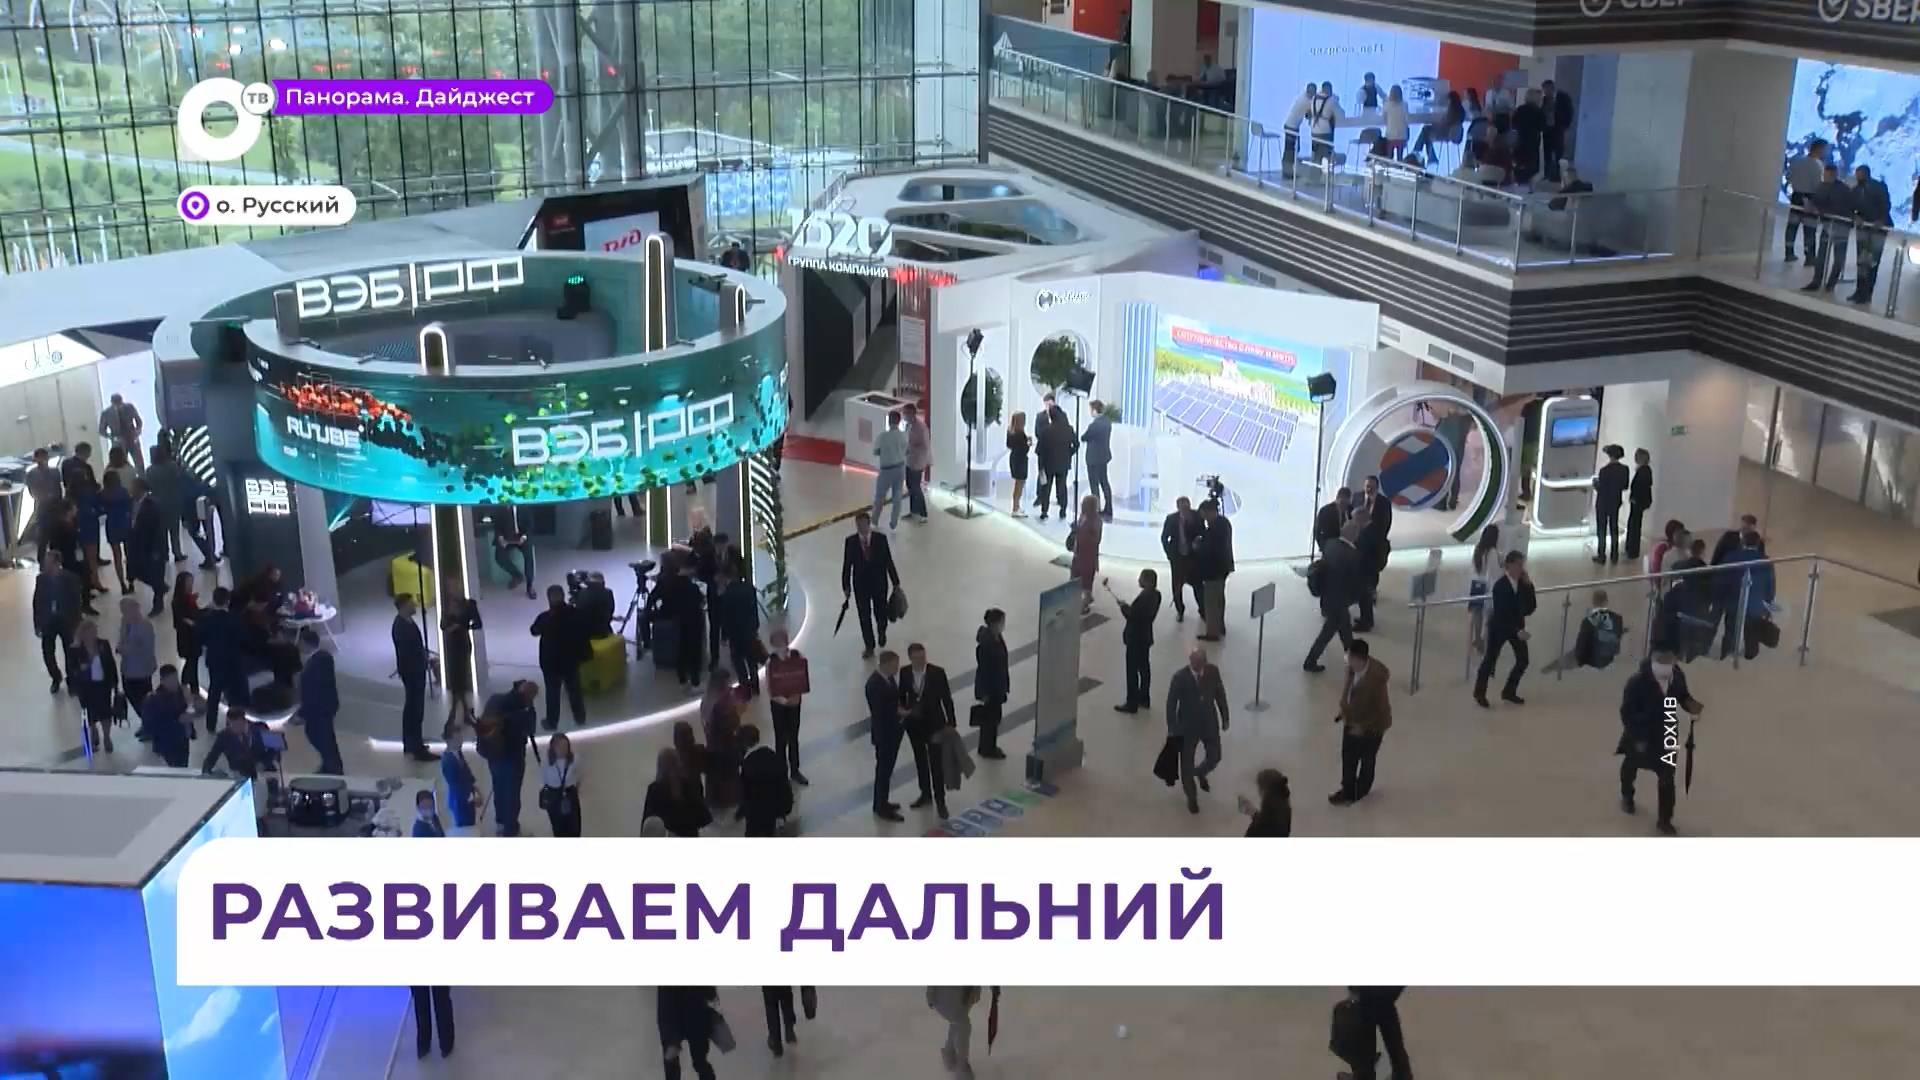 Дальневосточный международный банковский форум прошёл во Владивостоке